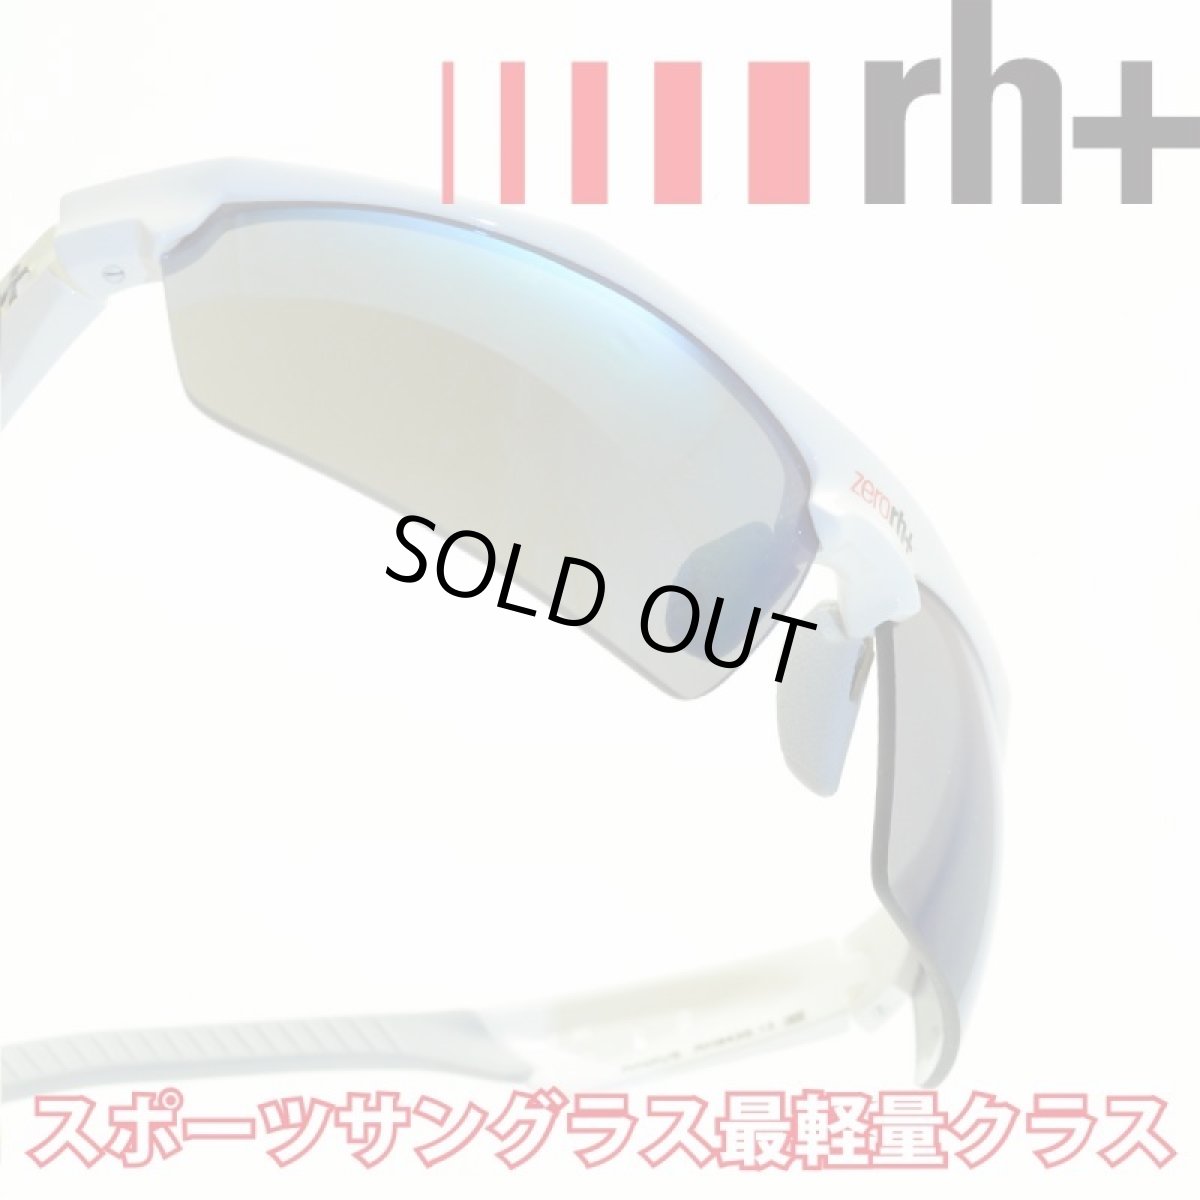 画像1: rh+ アールエイチプラス RADIUS RH843S13 メガネ 眼鏡 めがね メンズ レディース おしゃれ ブランド 人気 おすすめ フレーム 流行り 度付き　レンズ サングラス スポーツ (1)